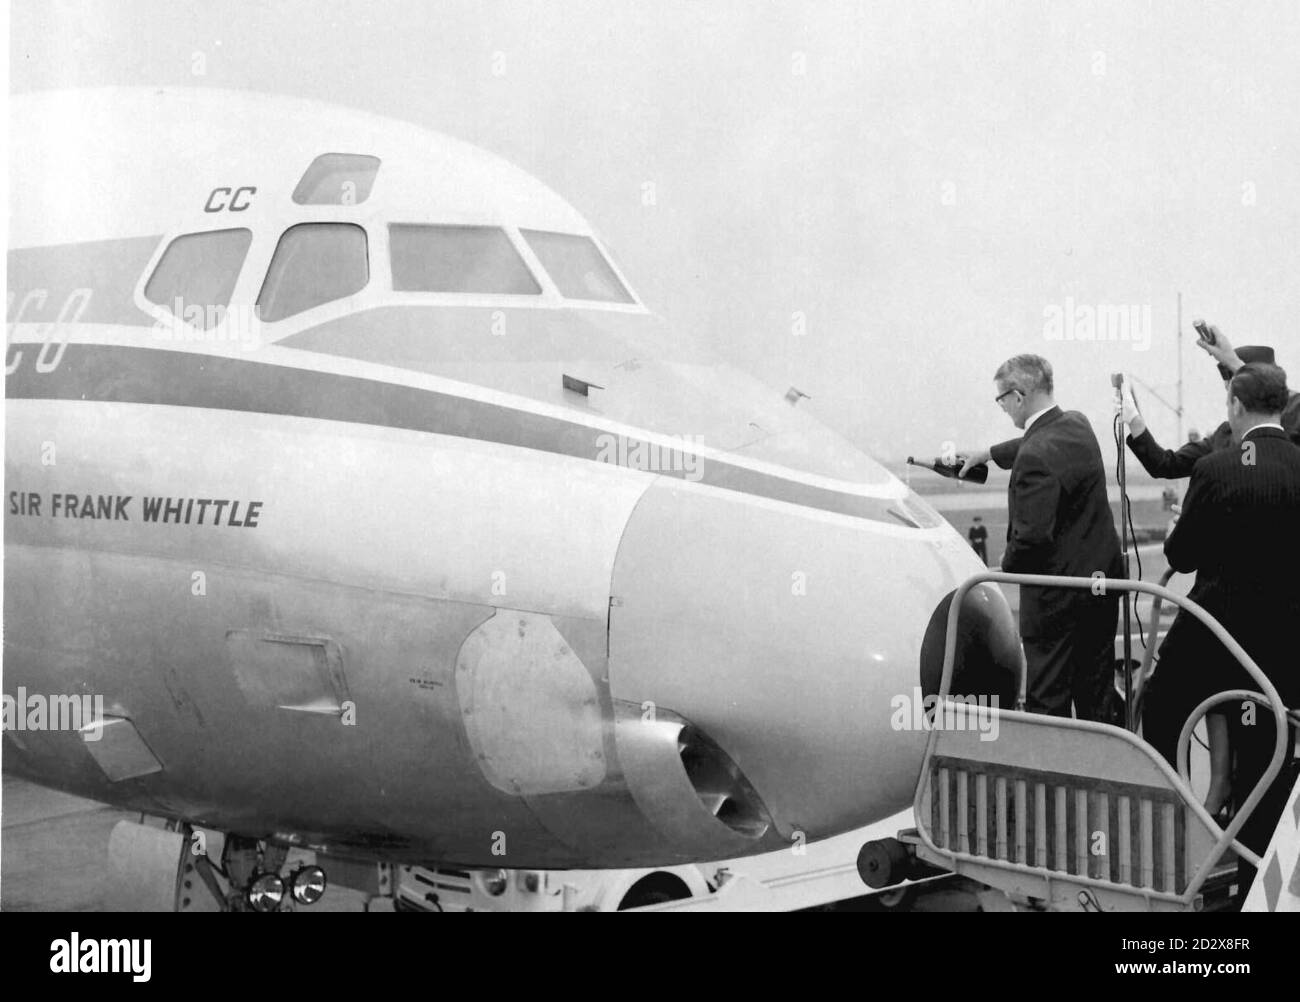 Sir Frank Whittle, der Pionier des Jet-Triebwerks, goss eine Flasche Champagner über die Nase, als er am Londoner Flughafen ein nach ihm benanntes DC-8-Jet-Flugzeug taufte. * Sir Frank ist heute (Freitag) im Alter von 89 Jahren gestorben. Siehe PA Story DEATH Whittle. NUR IN SCHWARZWEISS VERFÜGBAR. Stockfoto